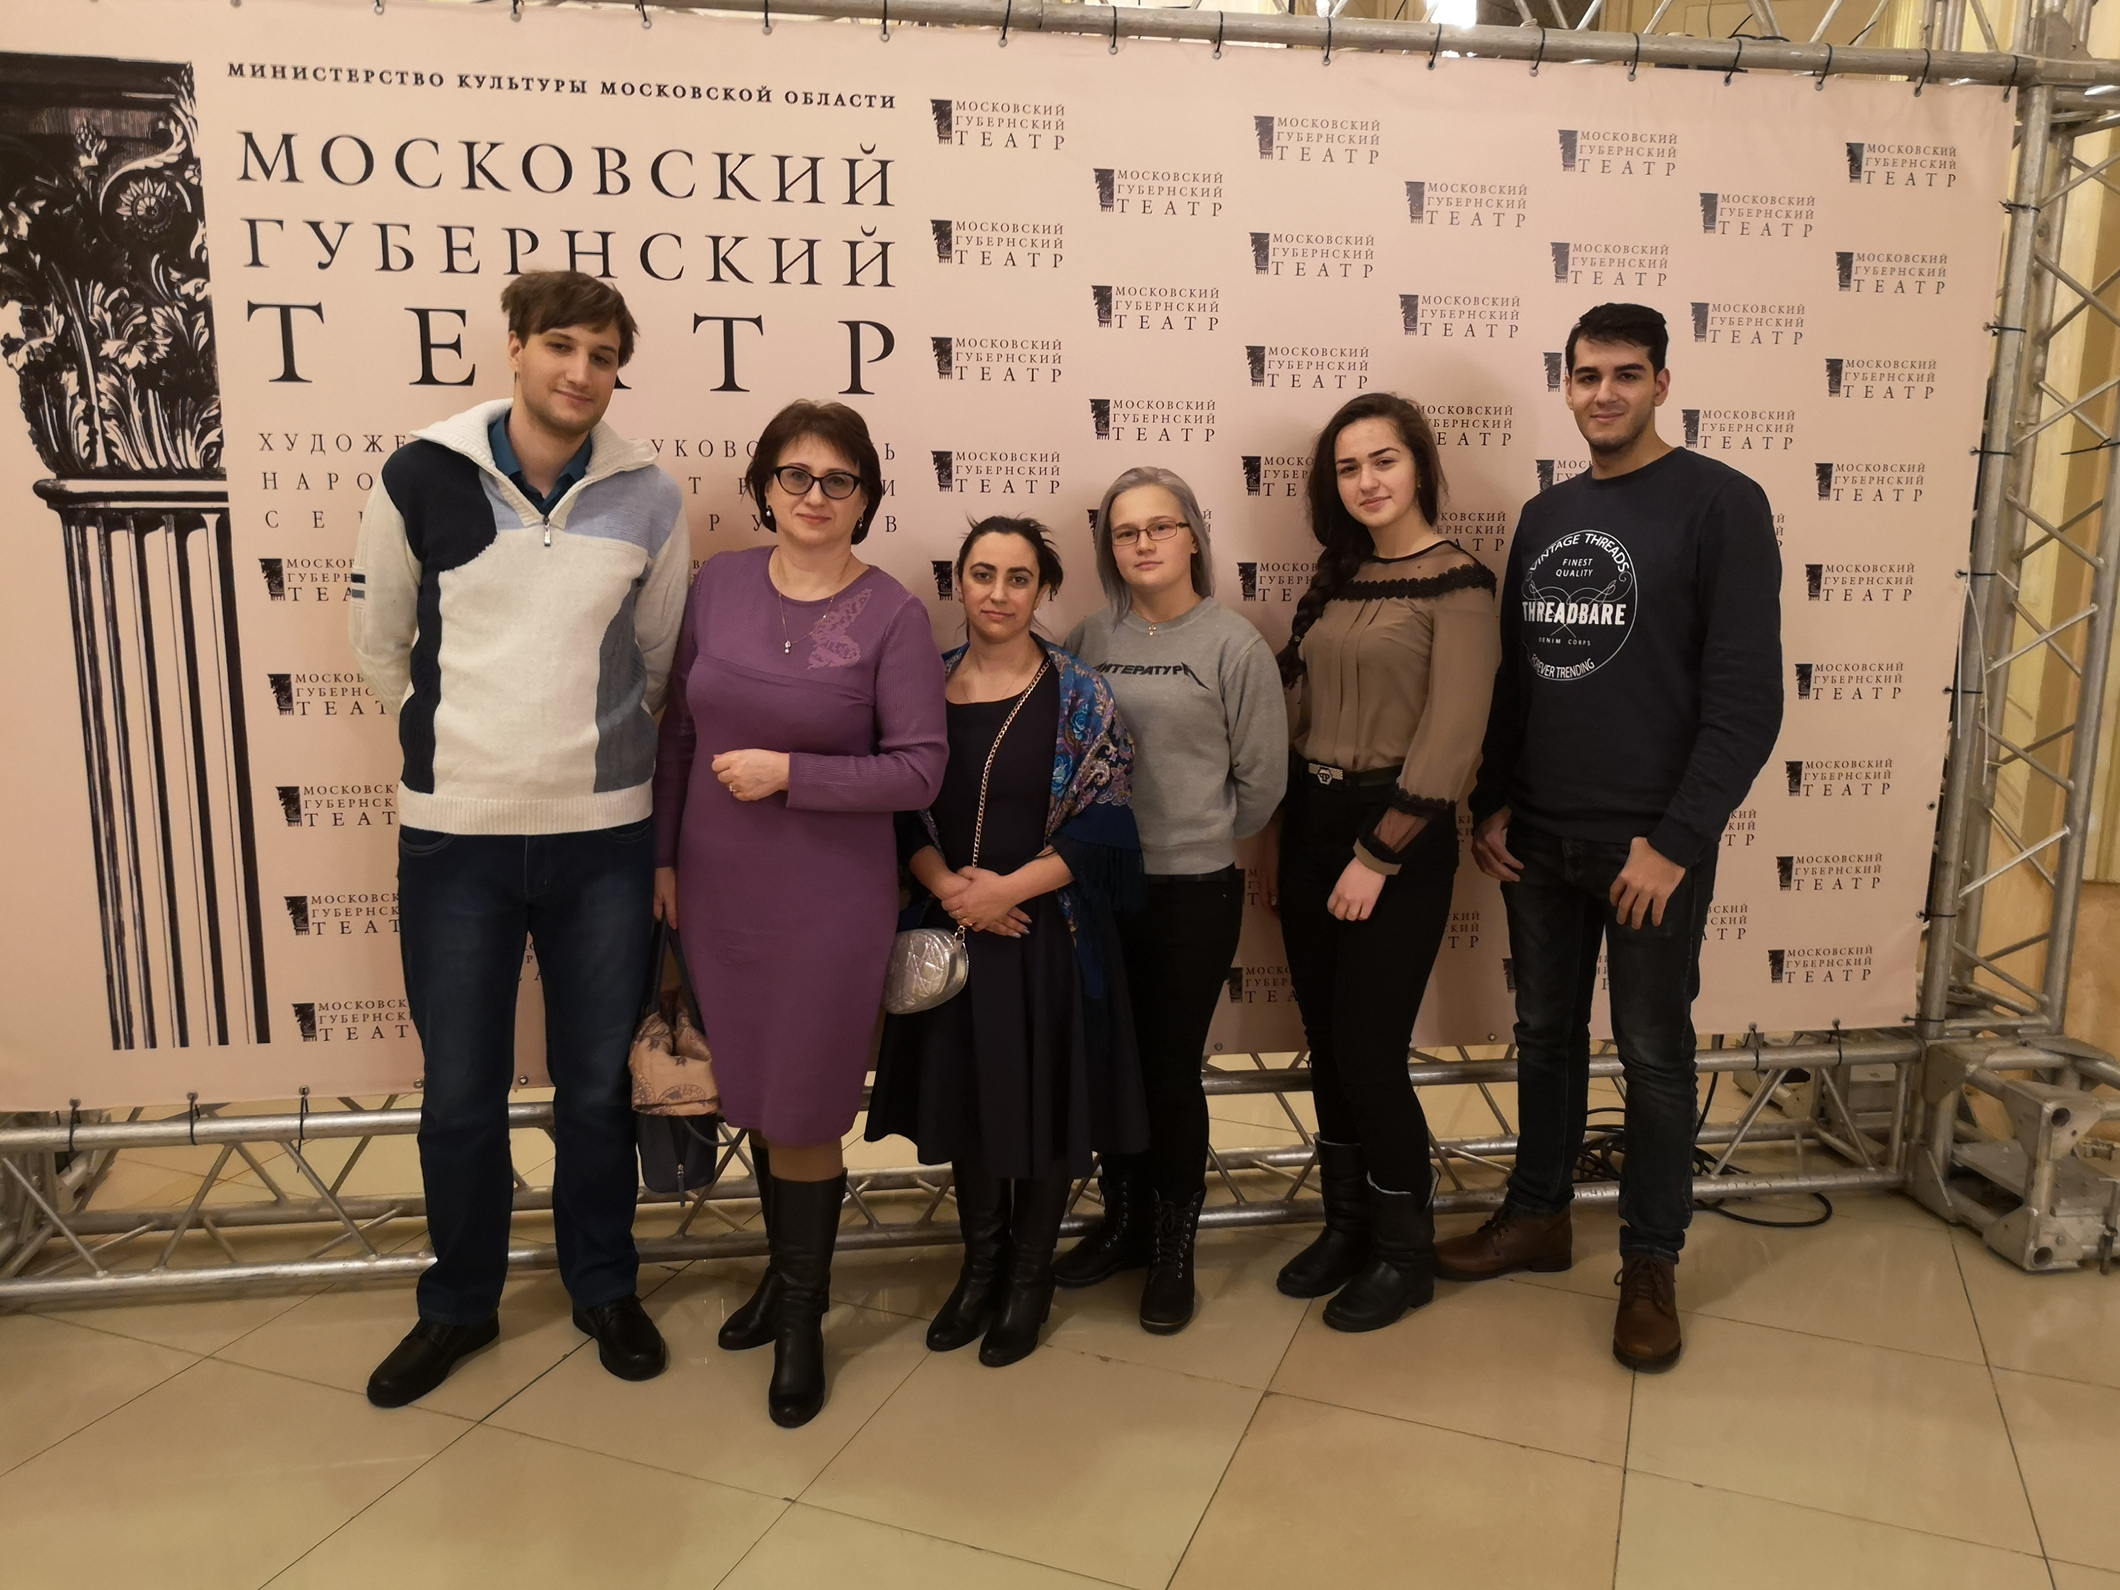 Посещение Московского губернского театра - «Технологический университет»